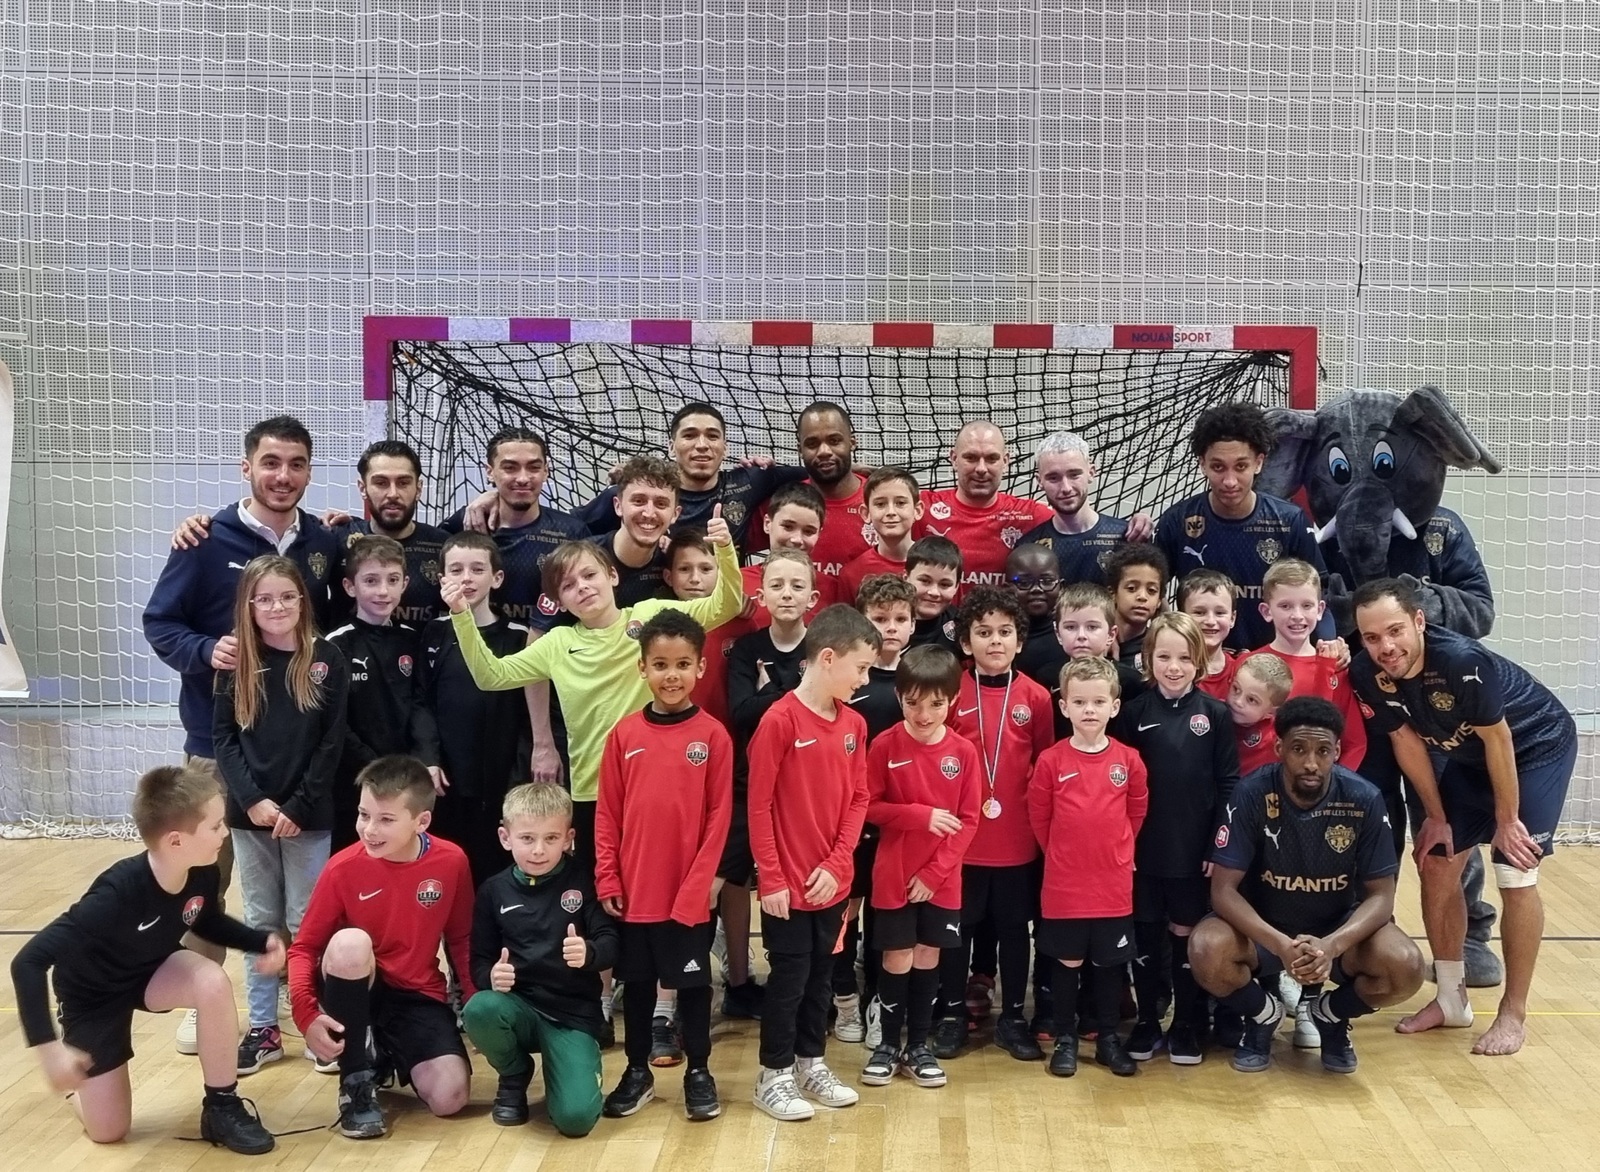 Entrée des joueurs - Nantes Metropole Futsal